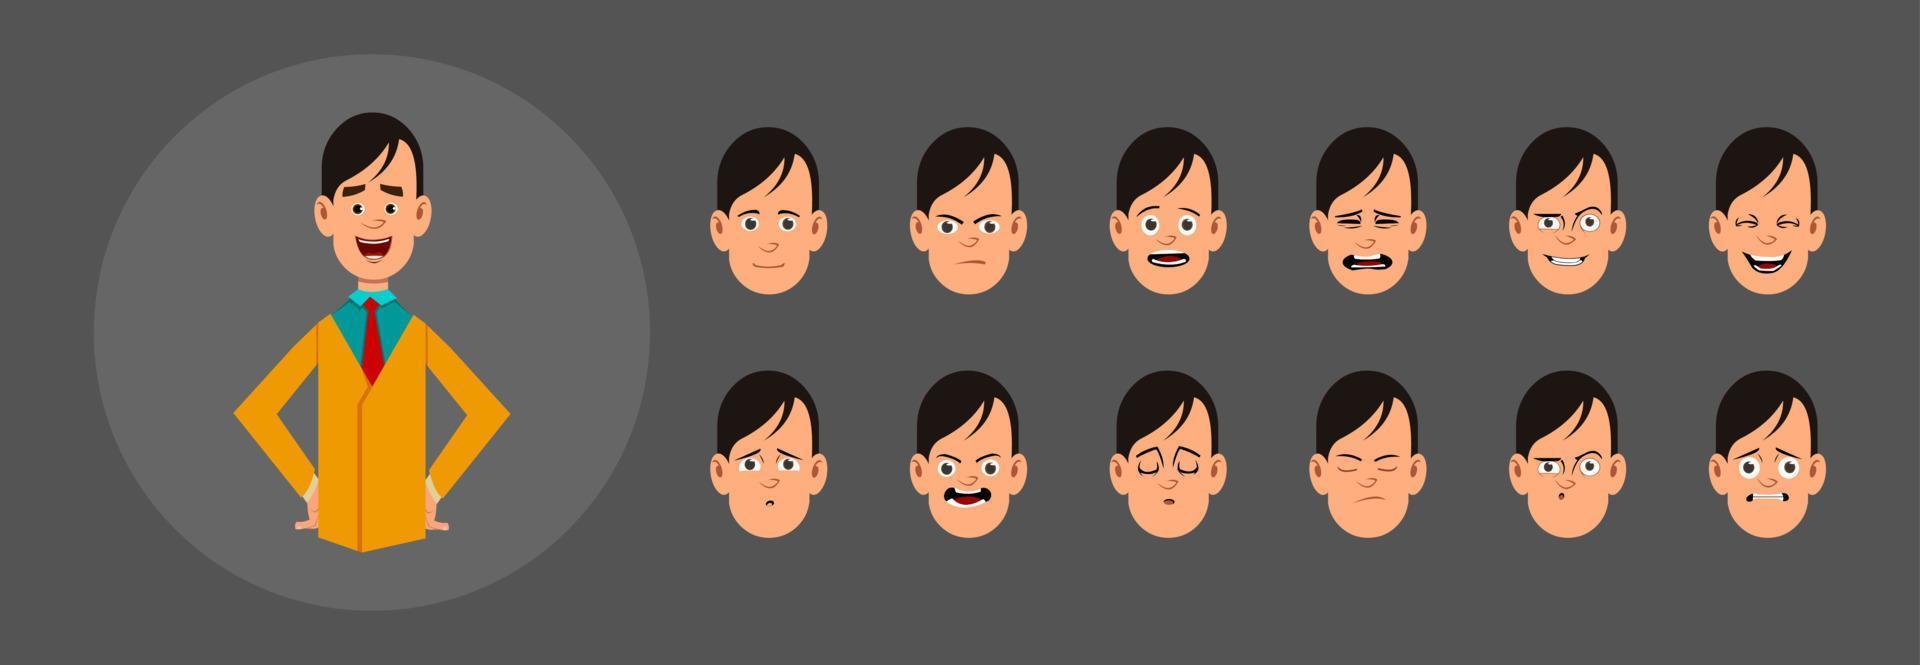 personas con diferentes emociones. diferentes emociones faciales para animación, movimiento o diseño personalizados. vector